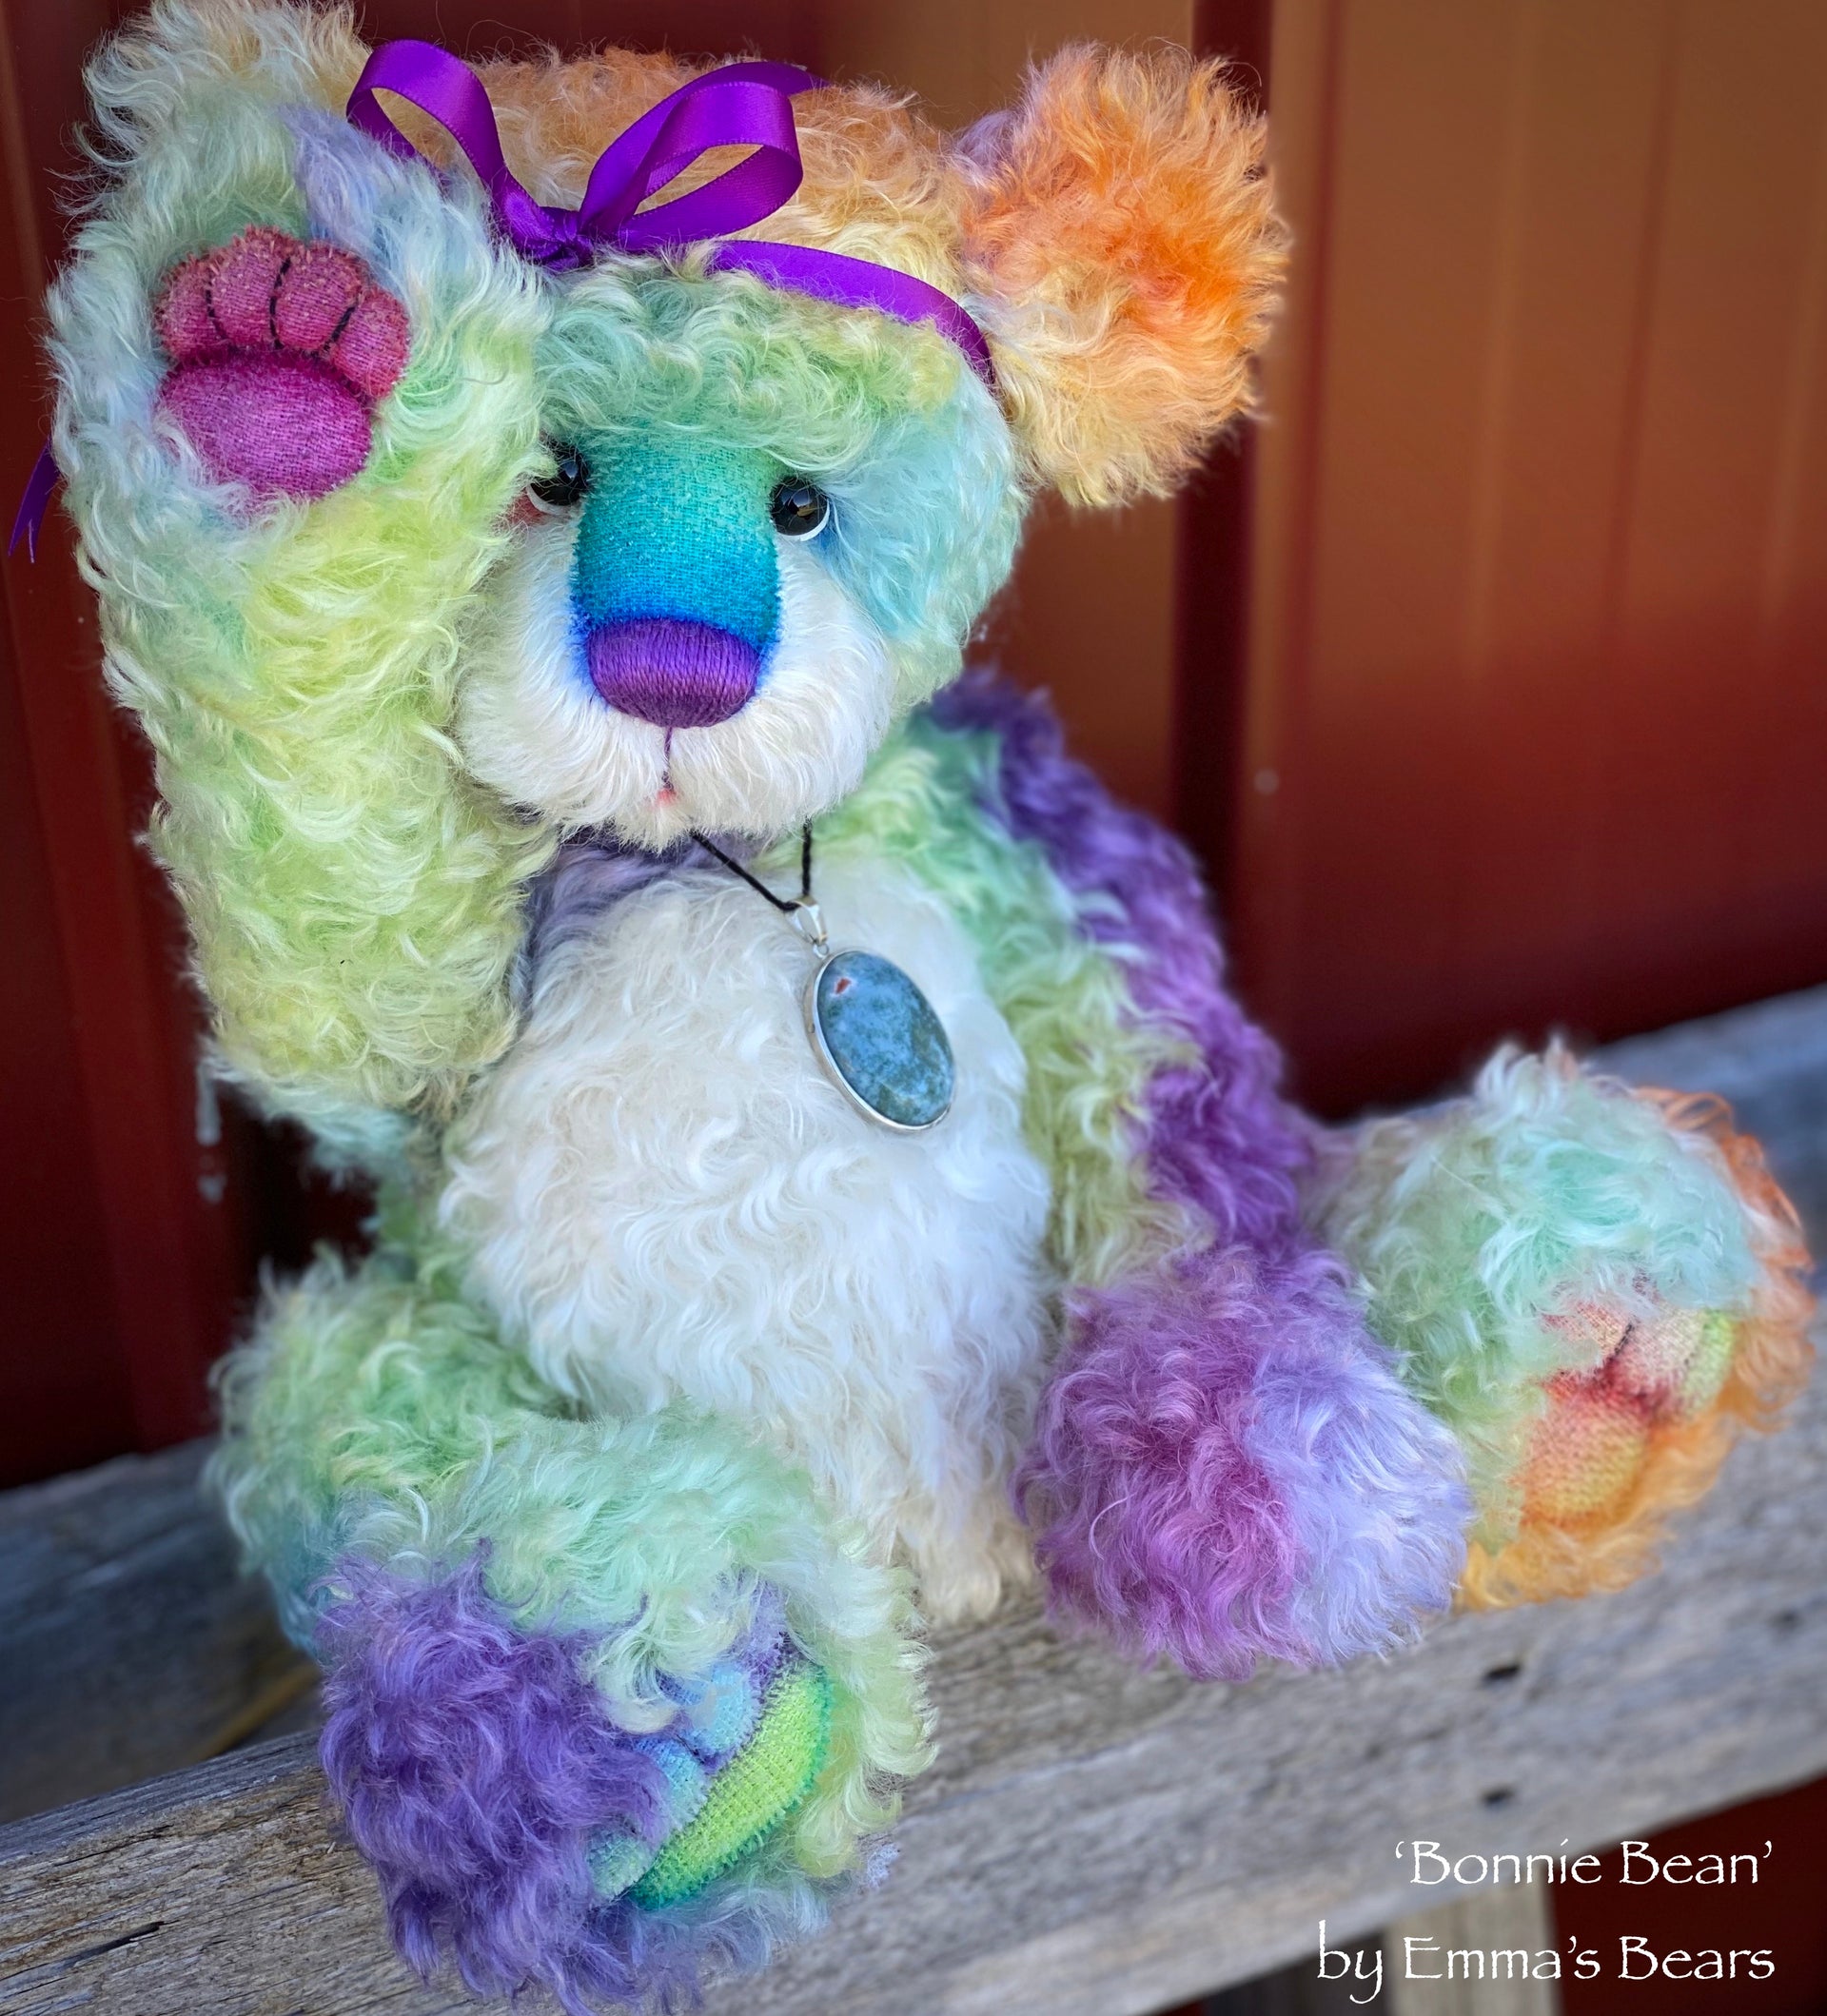 Bonnie Bean - 15" hand dyed rainbow curly kid mohair Artist Bear by Emma's Bears - OOAK